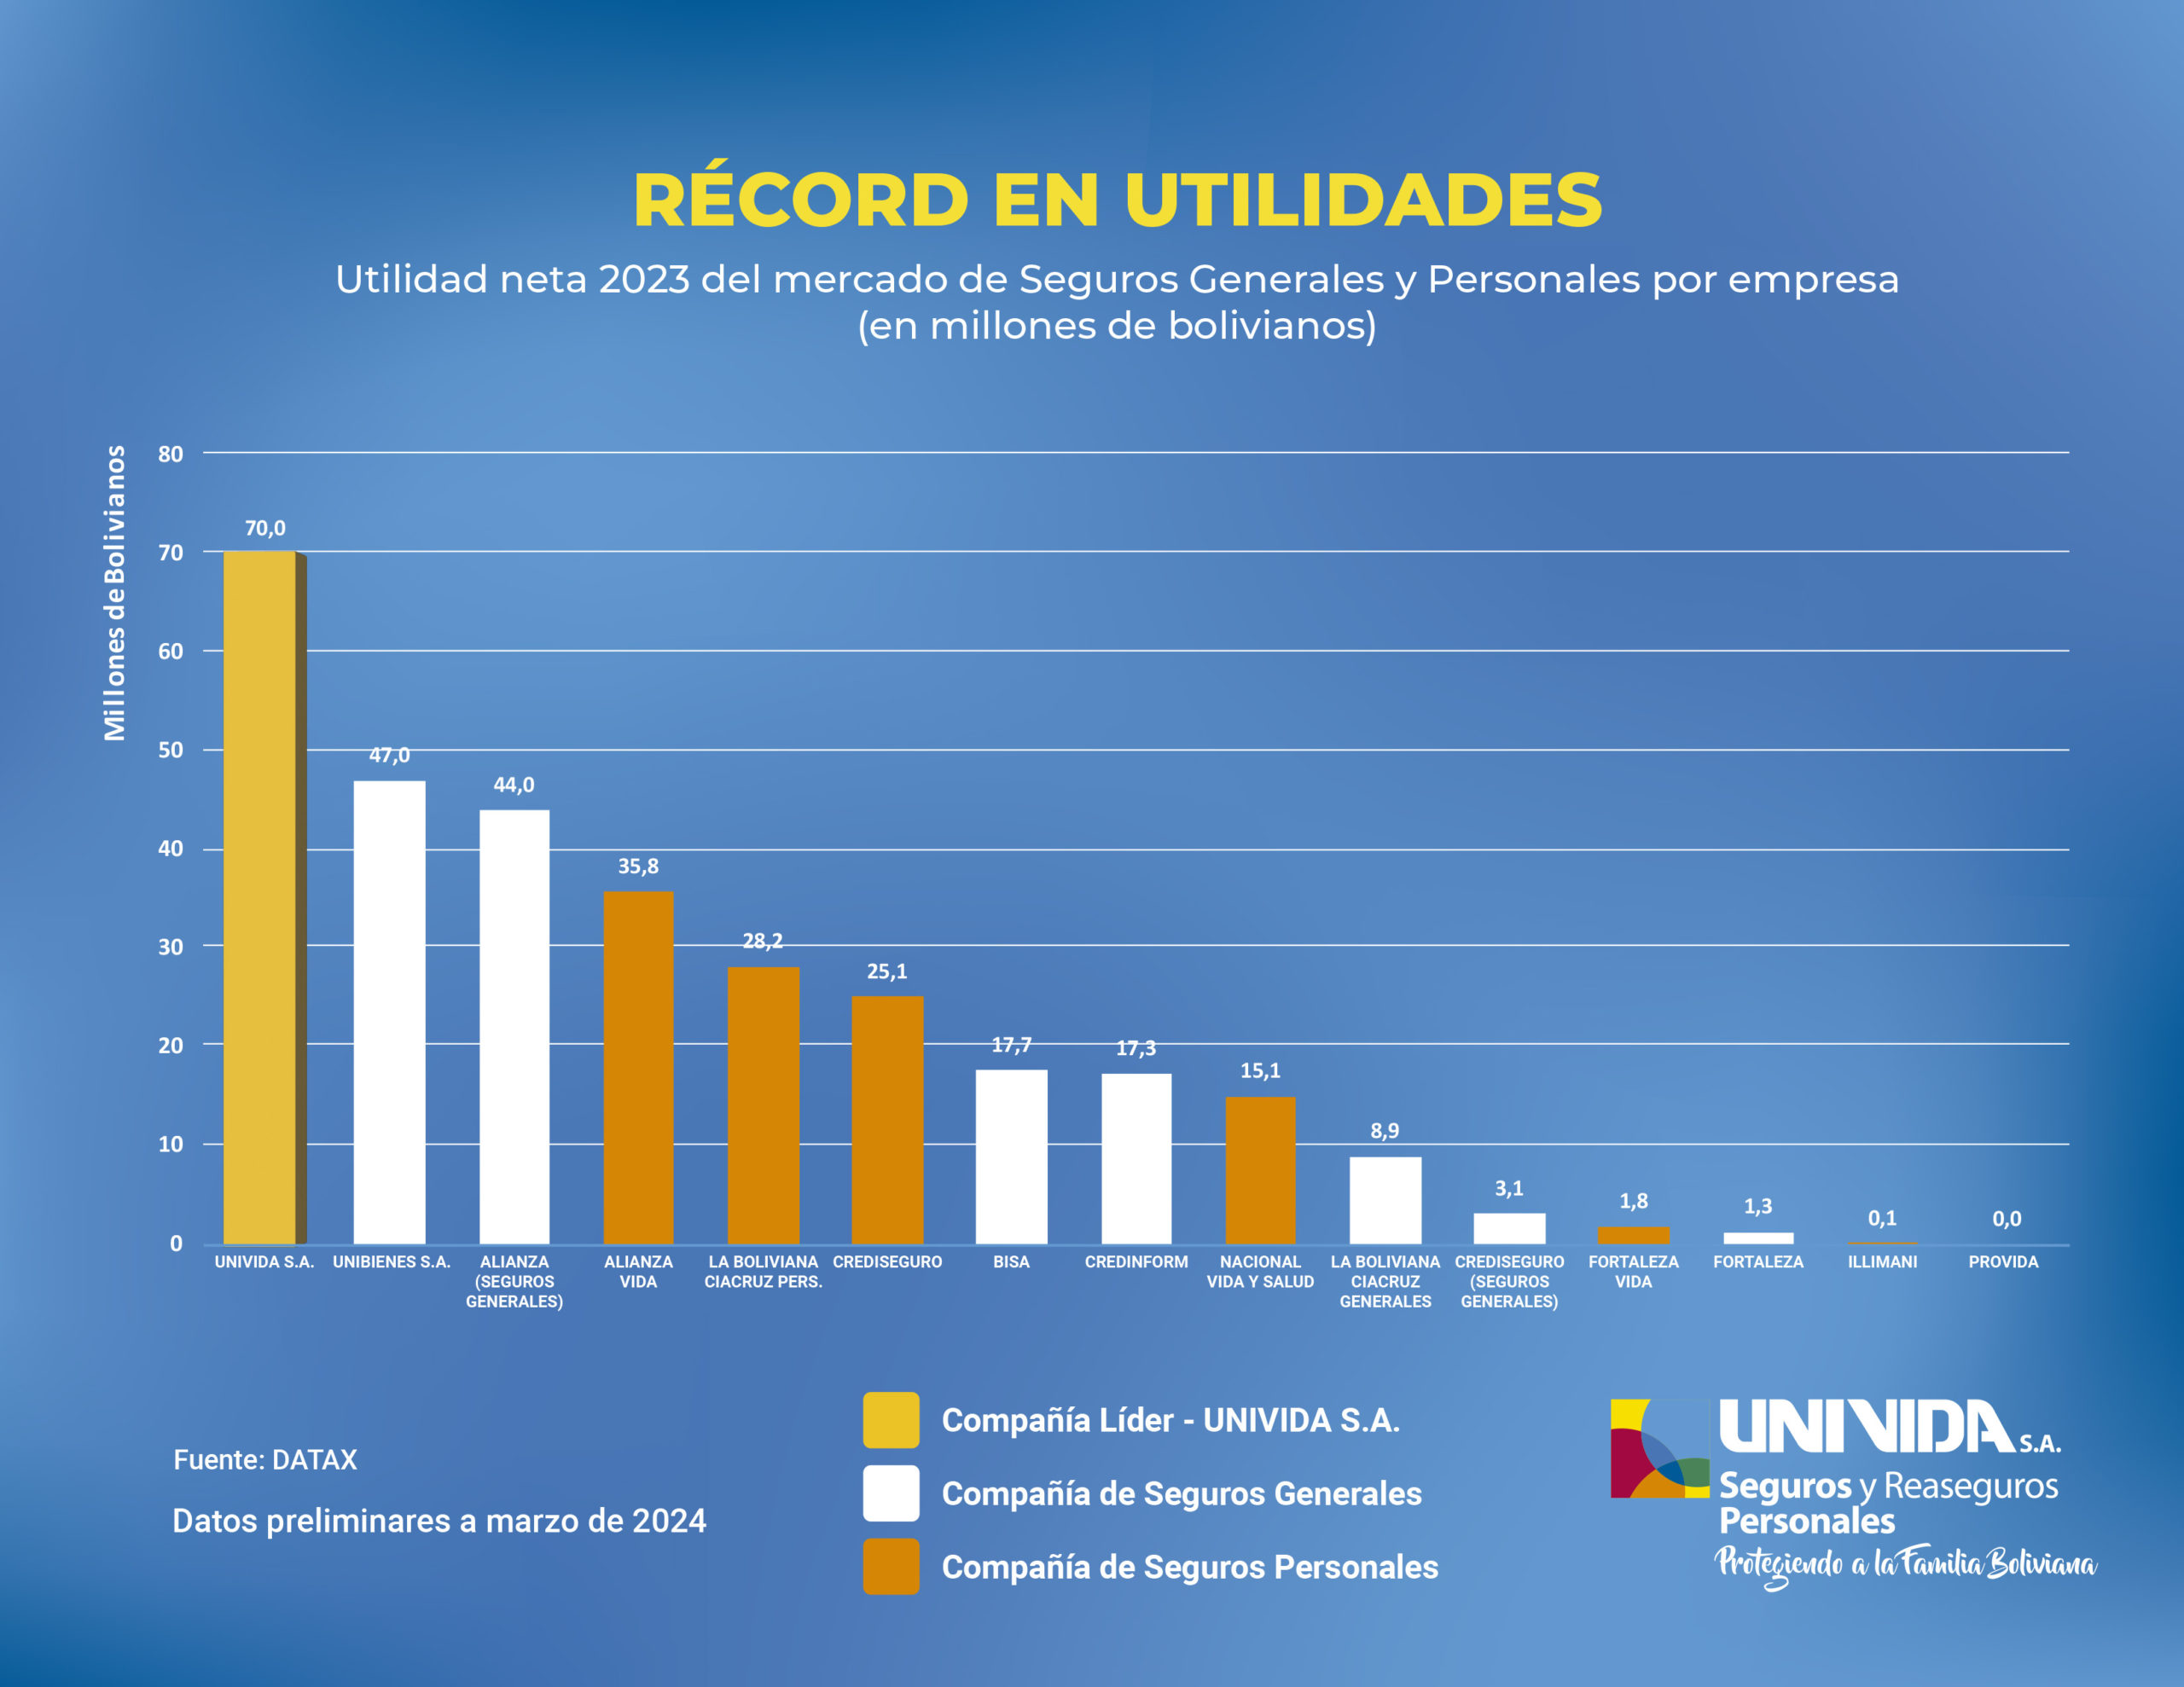 UNIVIDA S.A.: Innovación financiera y social en el mercado asegurador de Bolivia